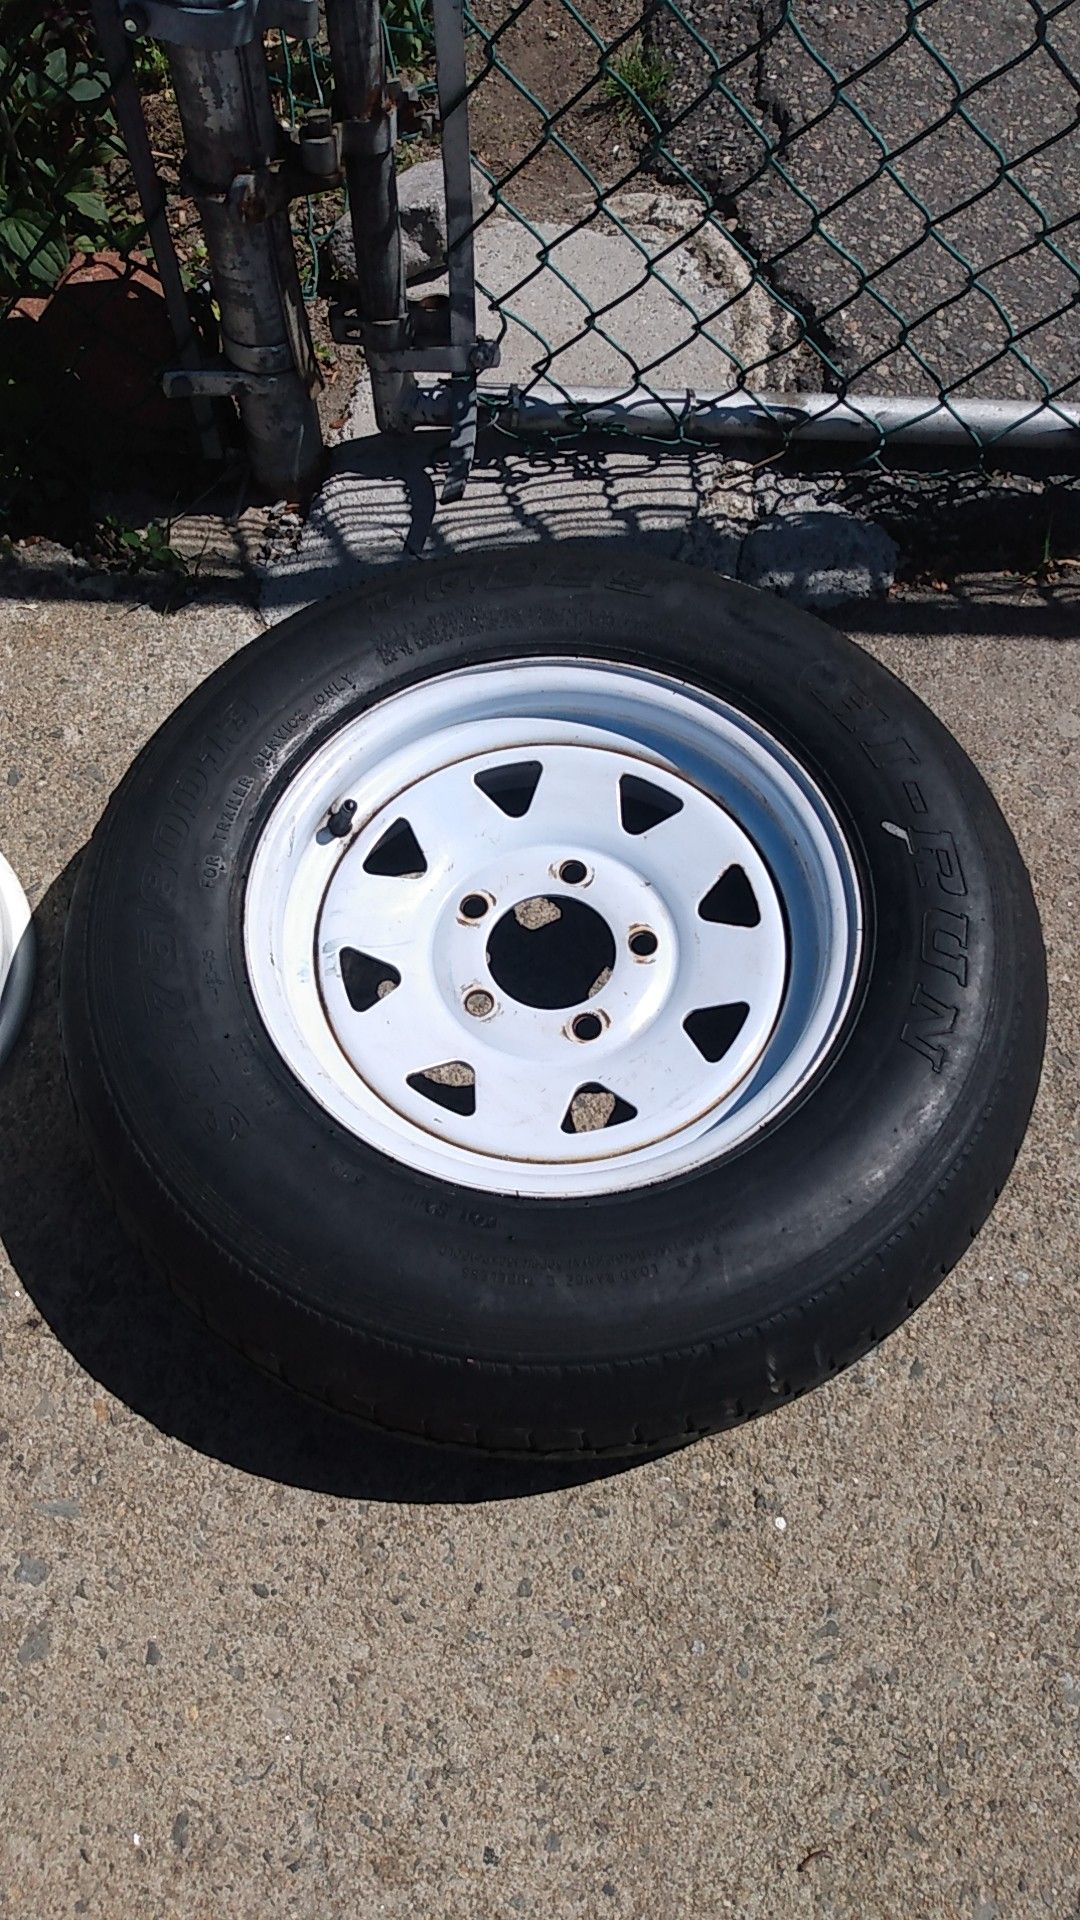 13" trailer tire and rim